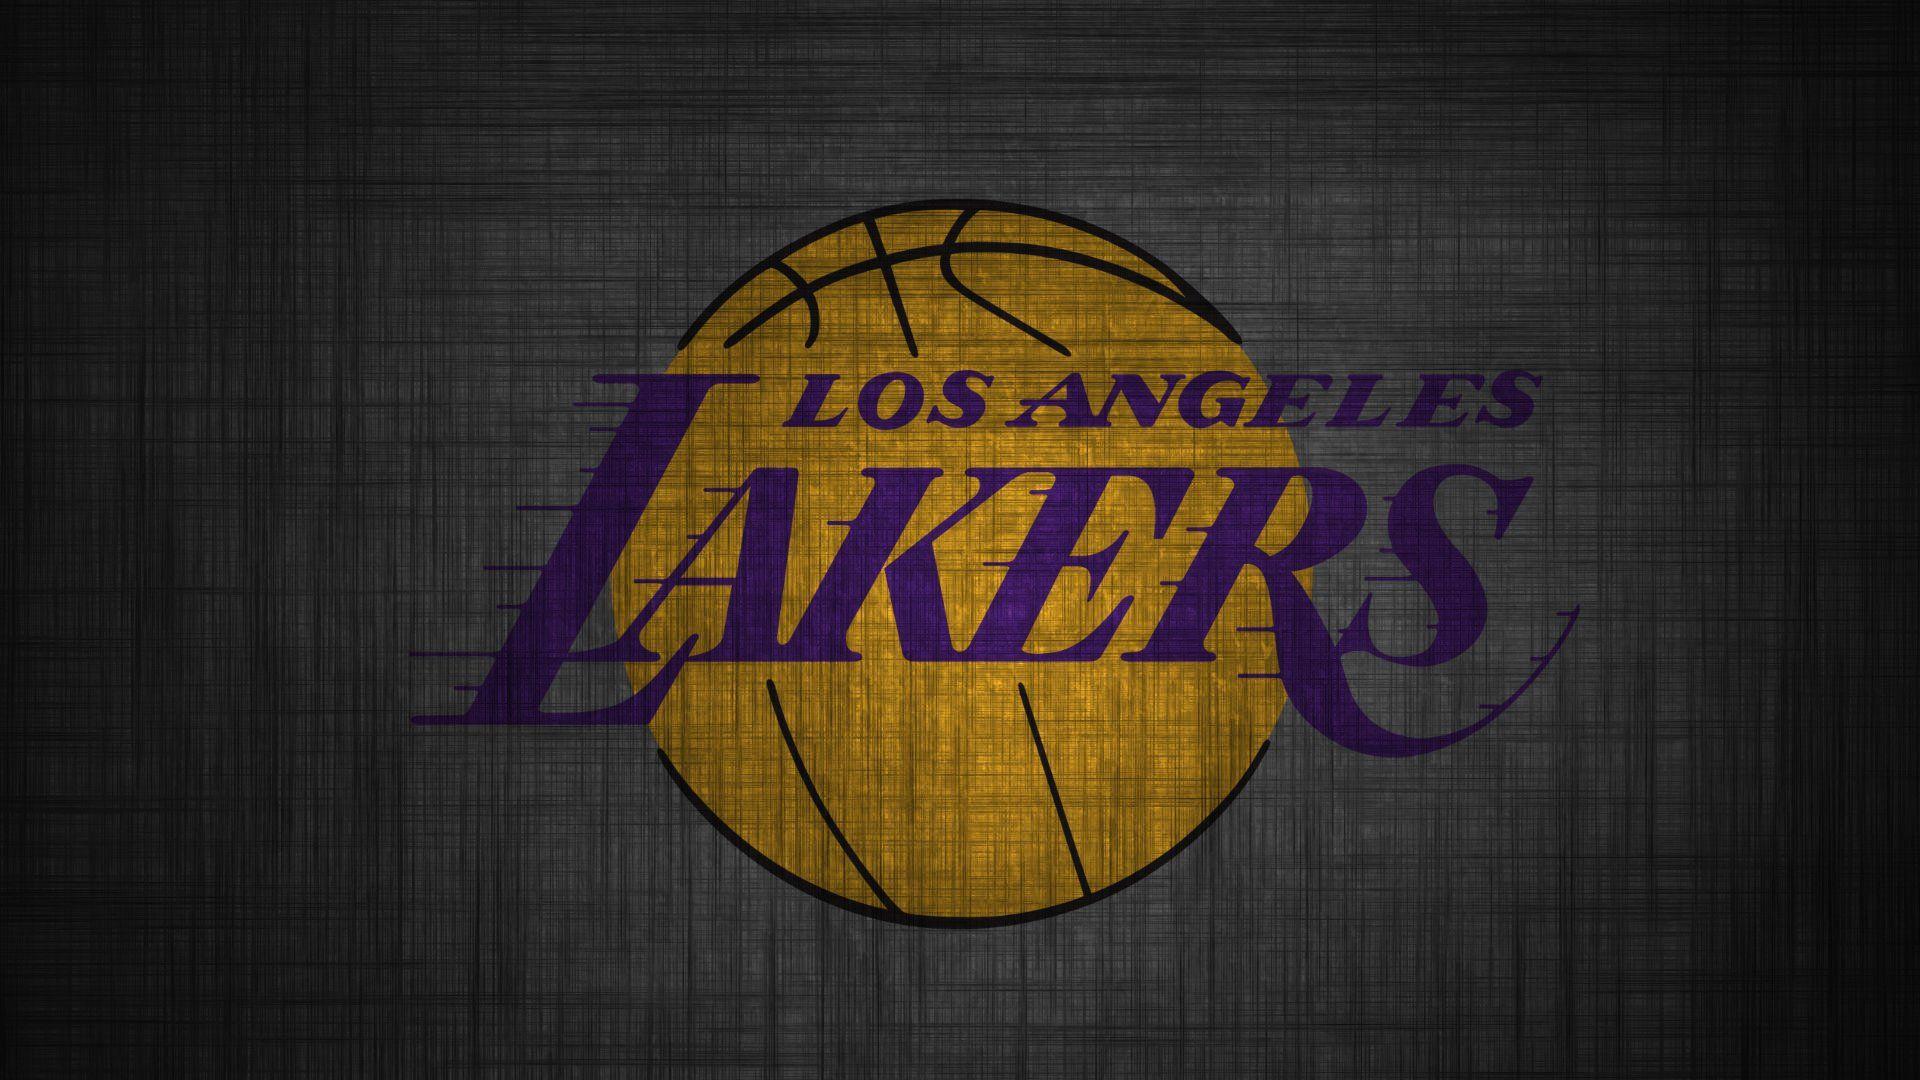 Lakers Wallpaper High Definition. Lakers wallpaper, Nba wallpaper, Lakers